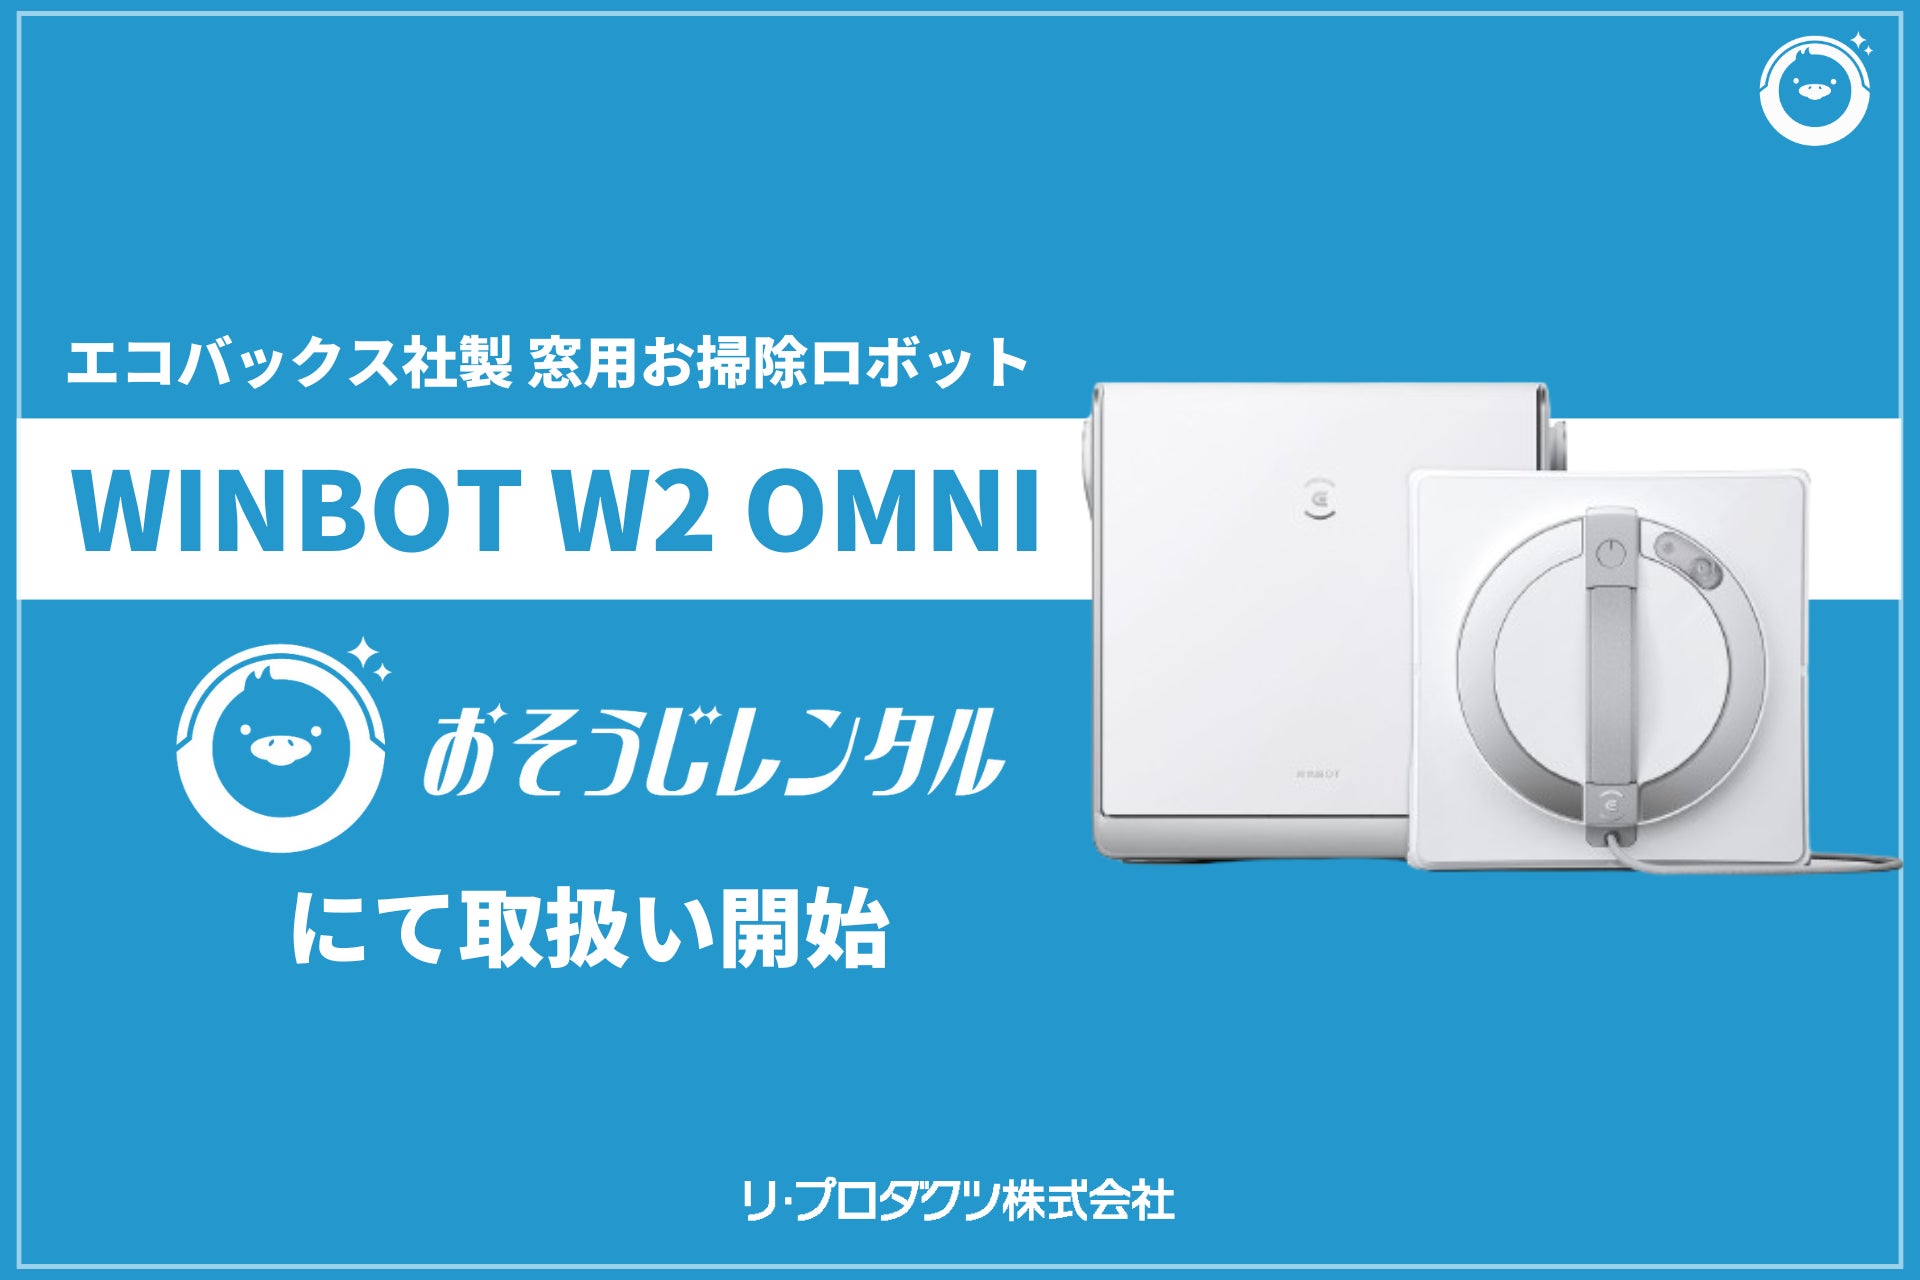 法人清掃DX特化の月額レンタルサービス「おそうじレンタル」で窓用掃除ロボット・WINBOT W2 OMNIの取り扱いを開始